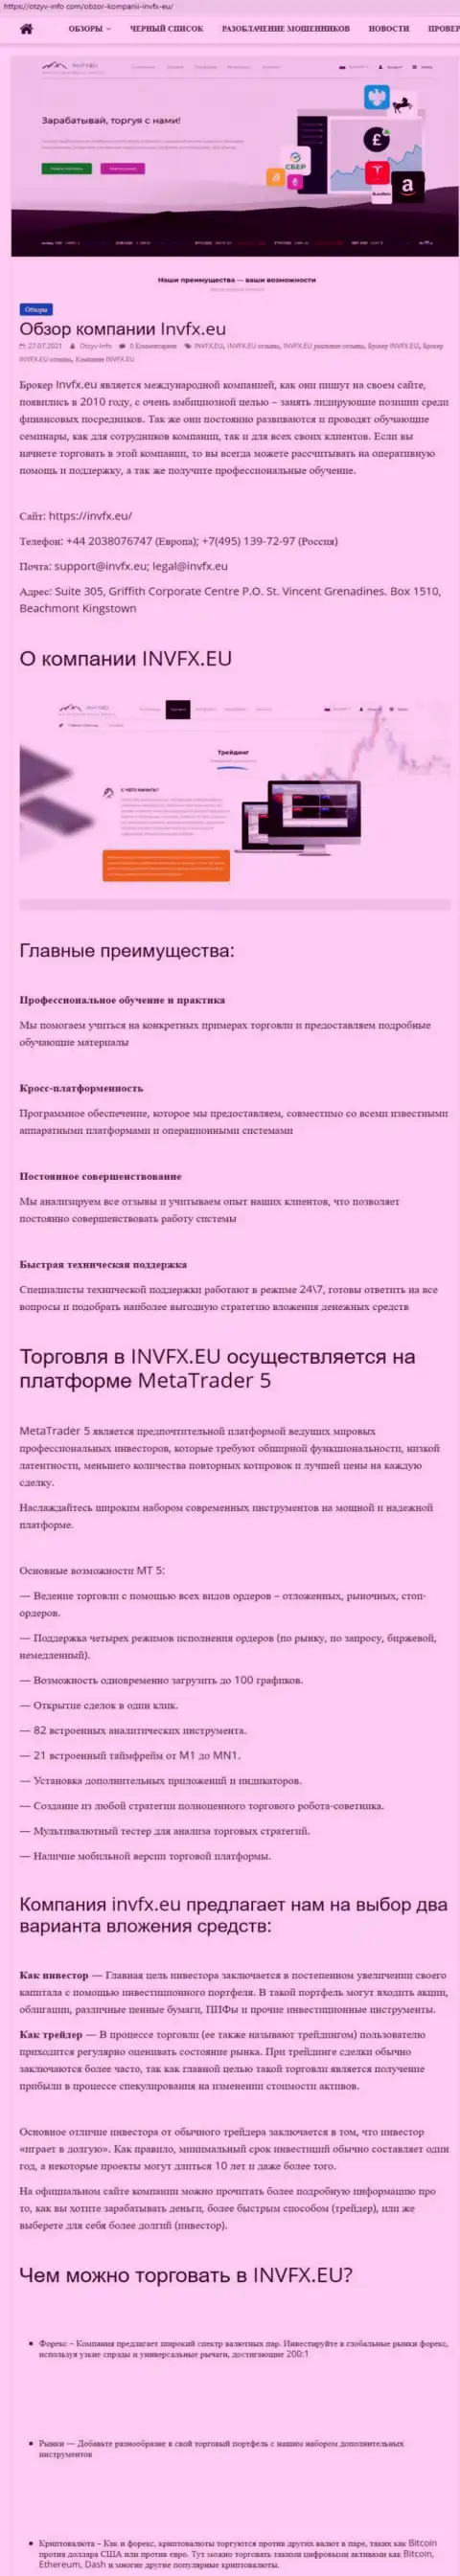 Web-сервис otzyv info com разместил статью о форекс-дилинговом центре INVFX